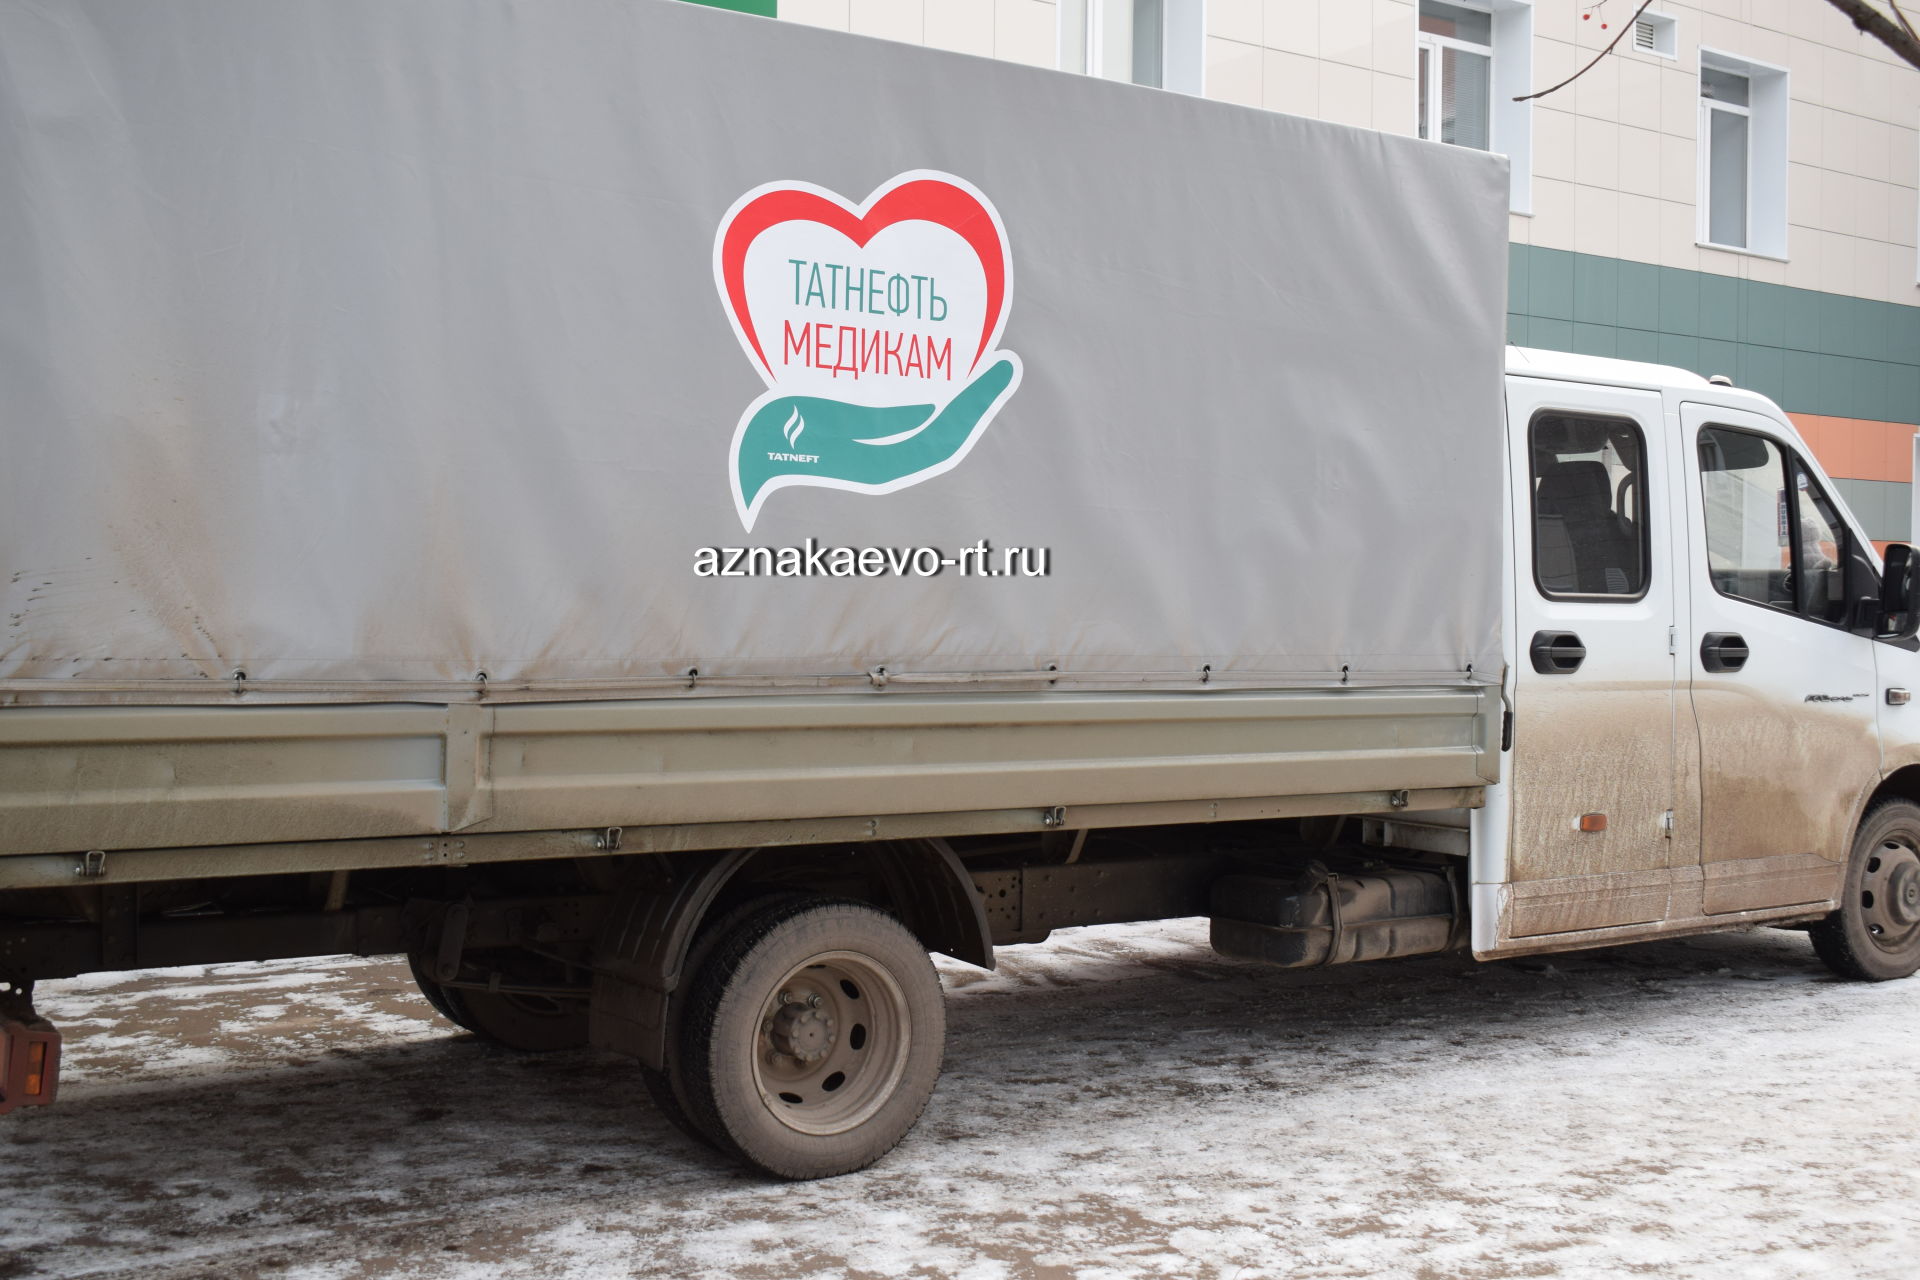 В Азнакаевскую центральную больницу прибыл целый грузовик со средствами защиты от коронавируса